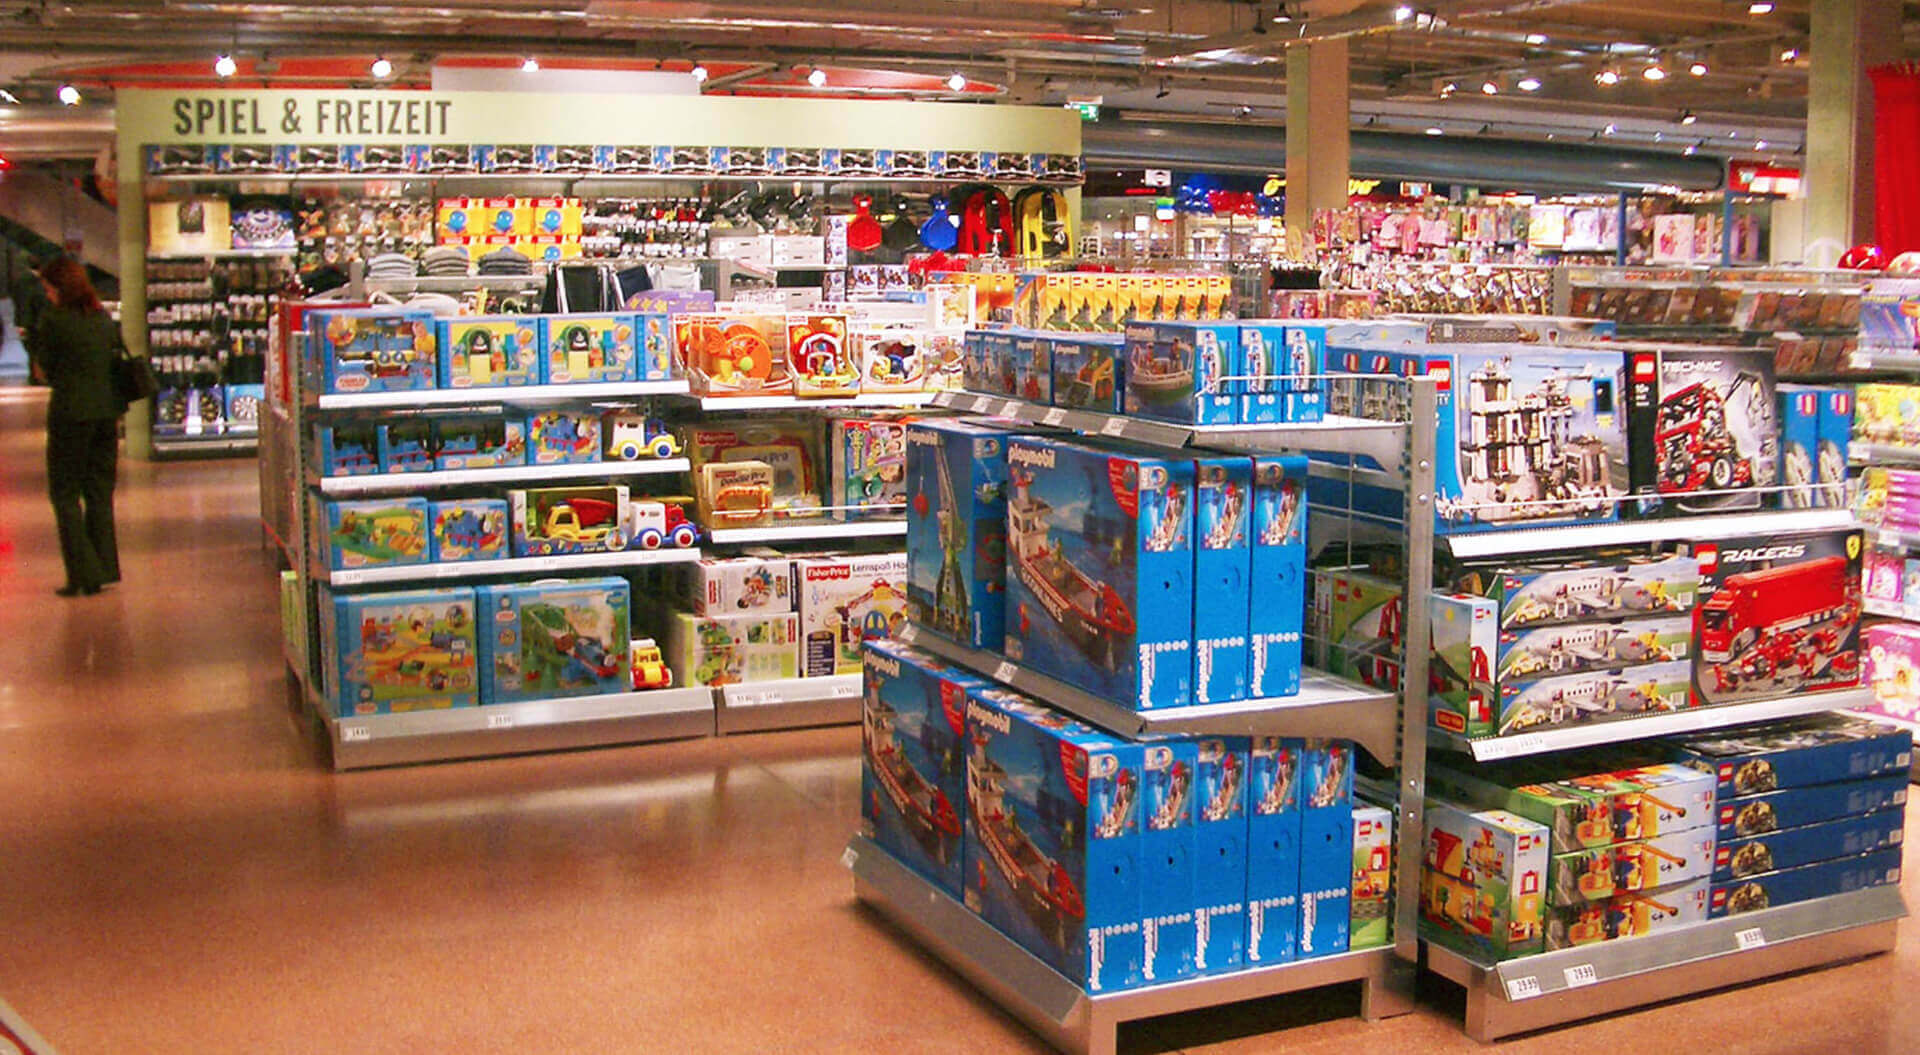 Interspar compact hypermarket Villach, Austria merchandising display